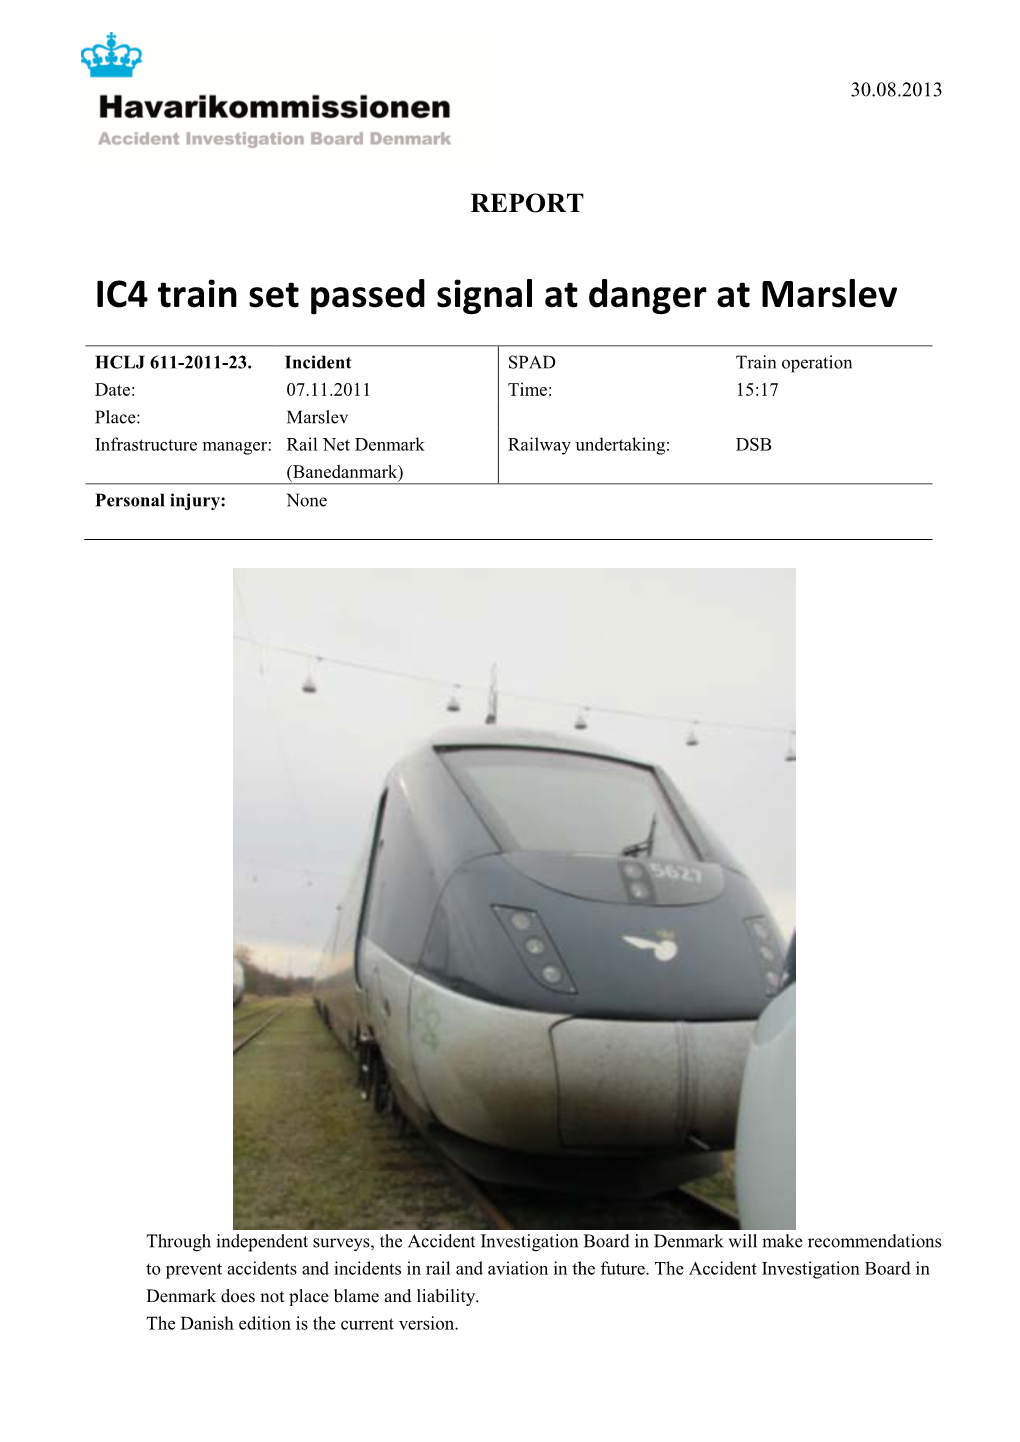 IC4 Train Set Passed Signal at Danger at Marslev